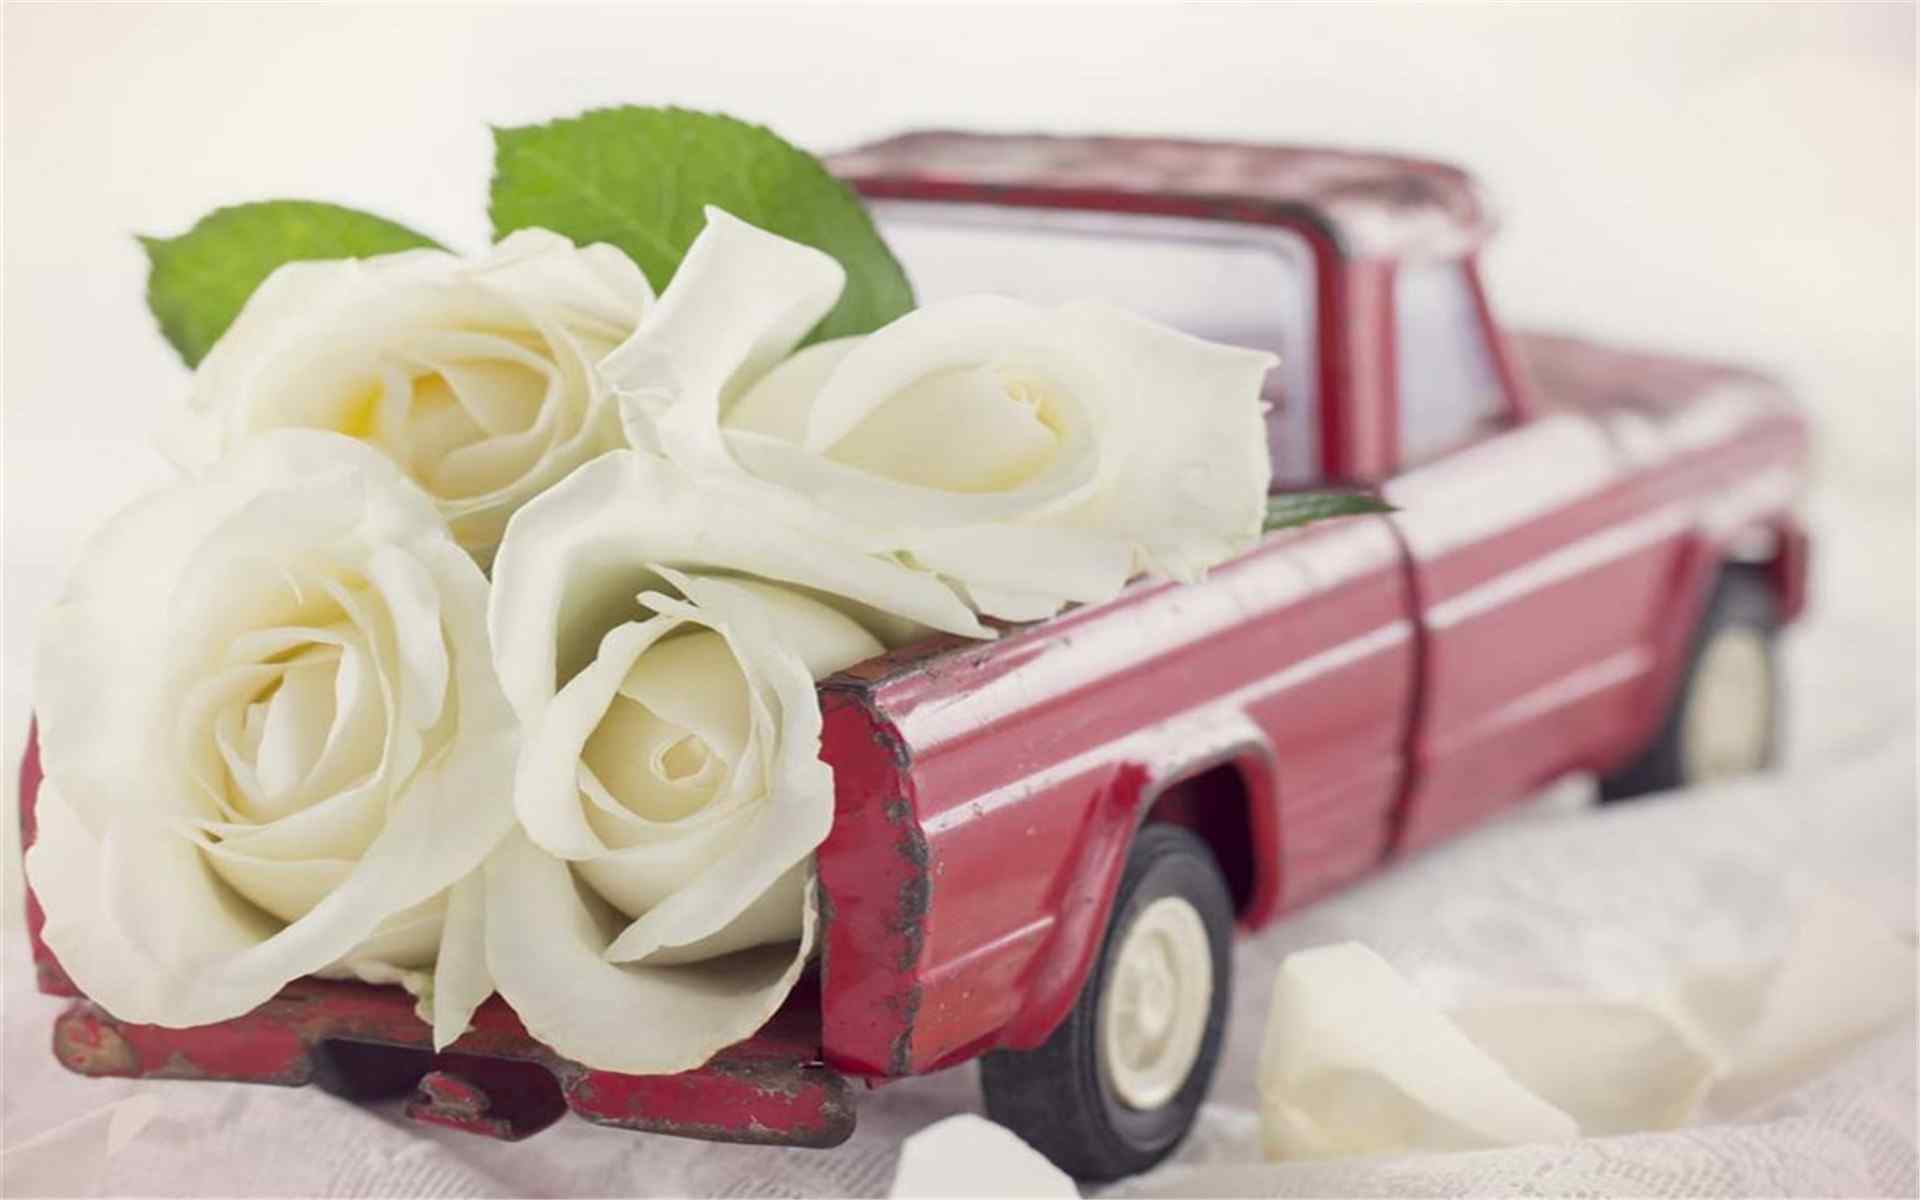 唯美创意玩具小车和鲜花搭配图片桌面壁纸